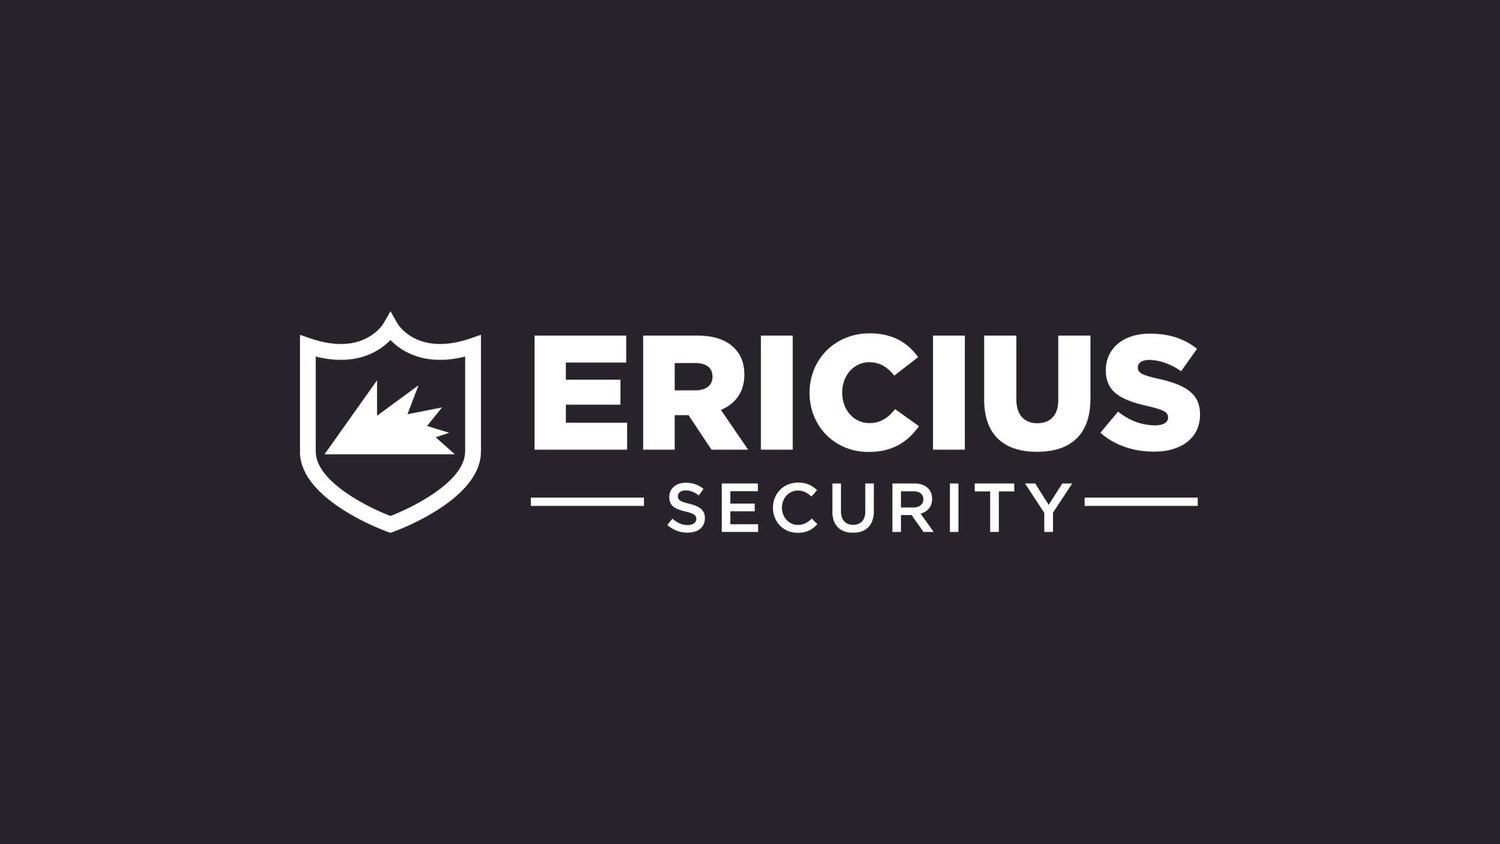 Ericius Security